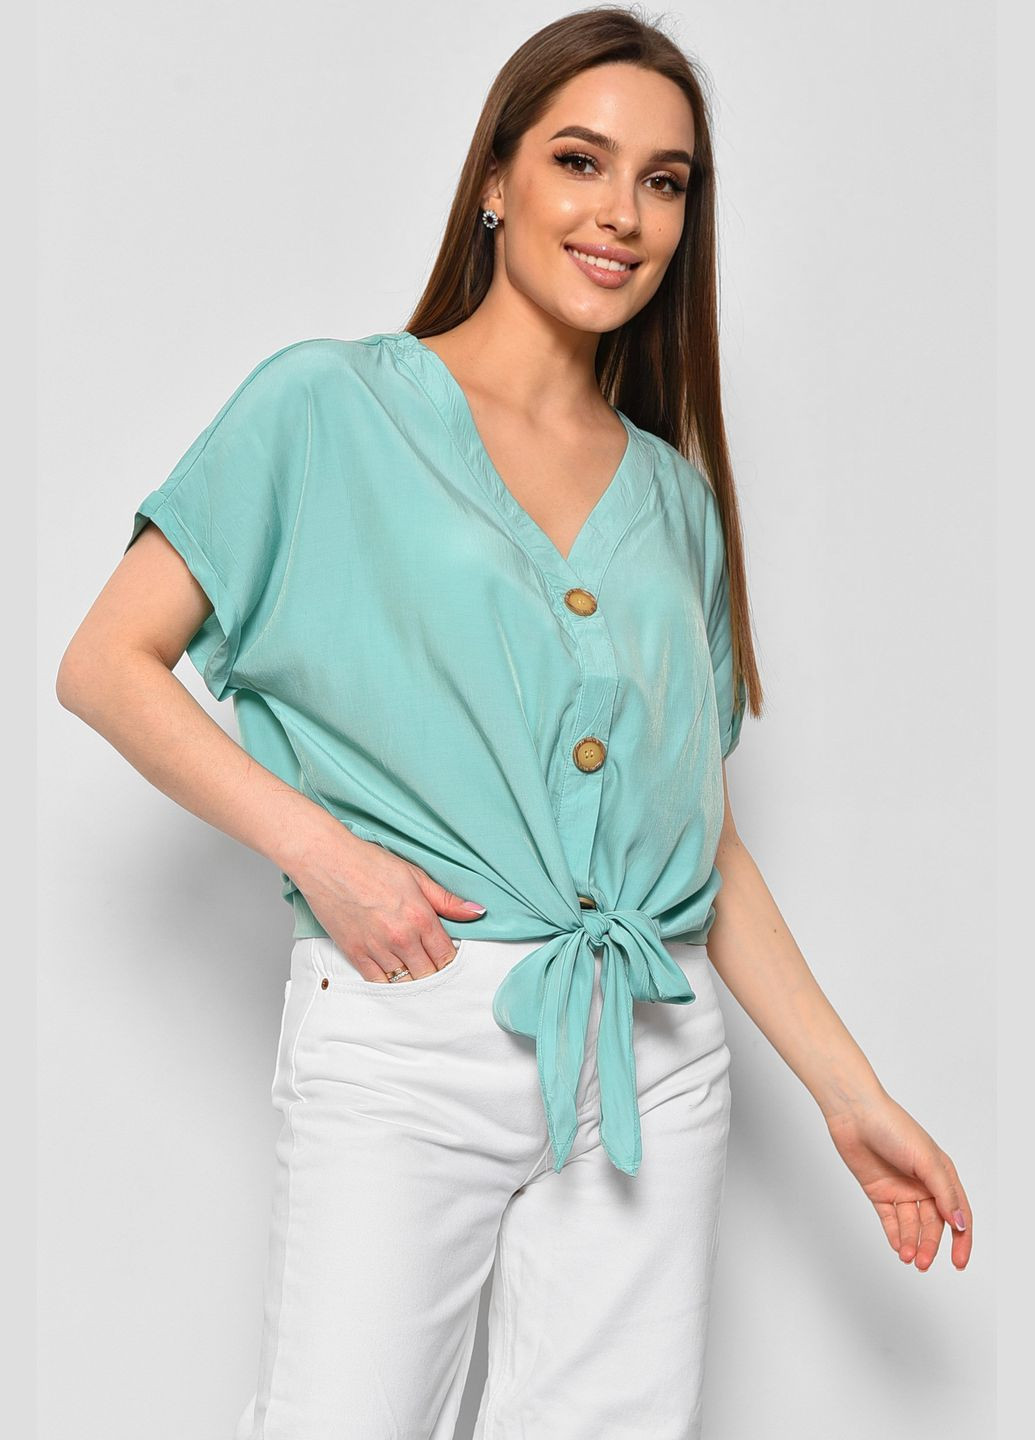 Мятная блуза женская полубатальная с коротким рукавом мятного цвета с баской Let's Shop